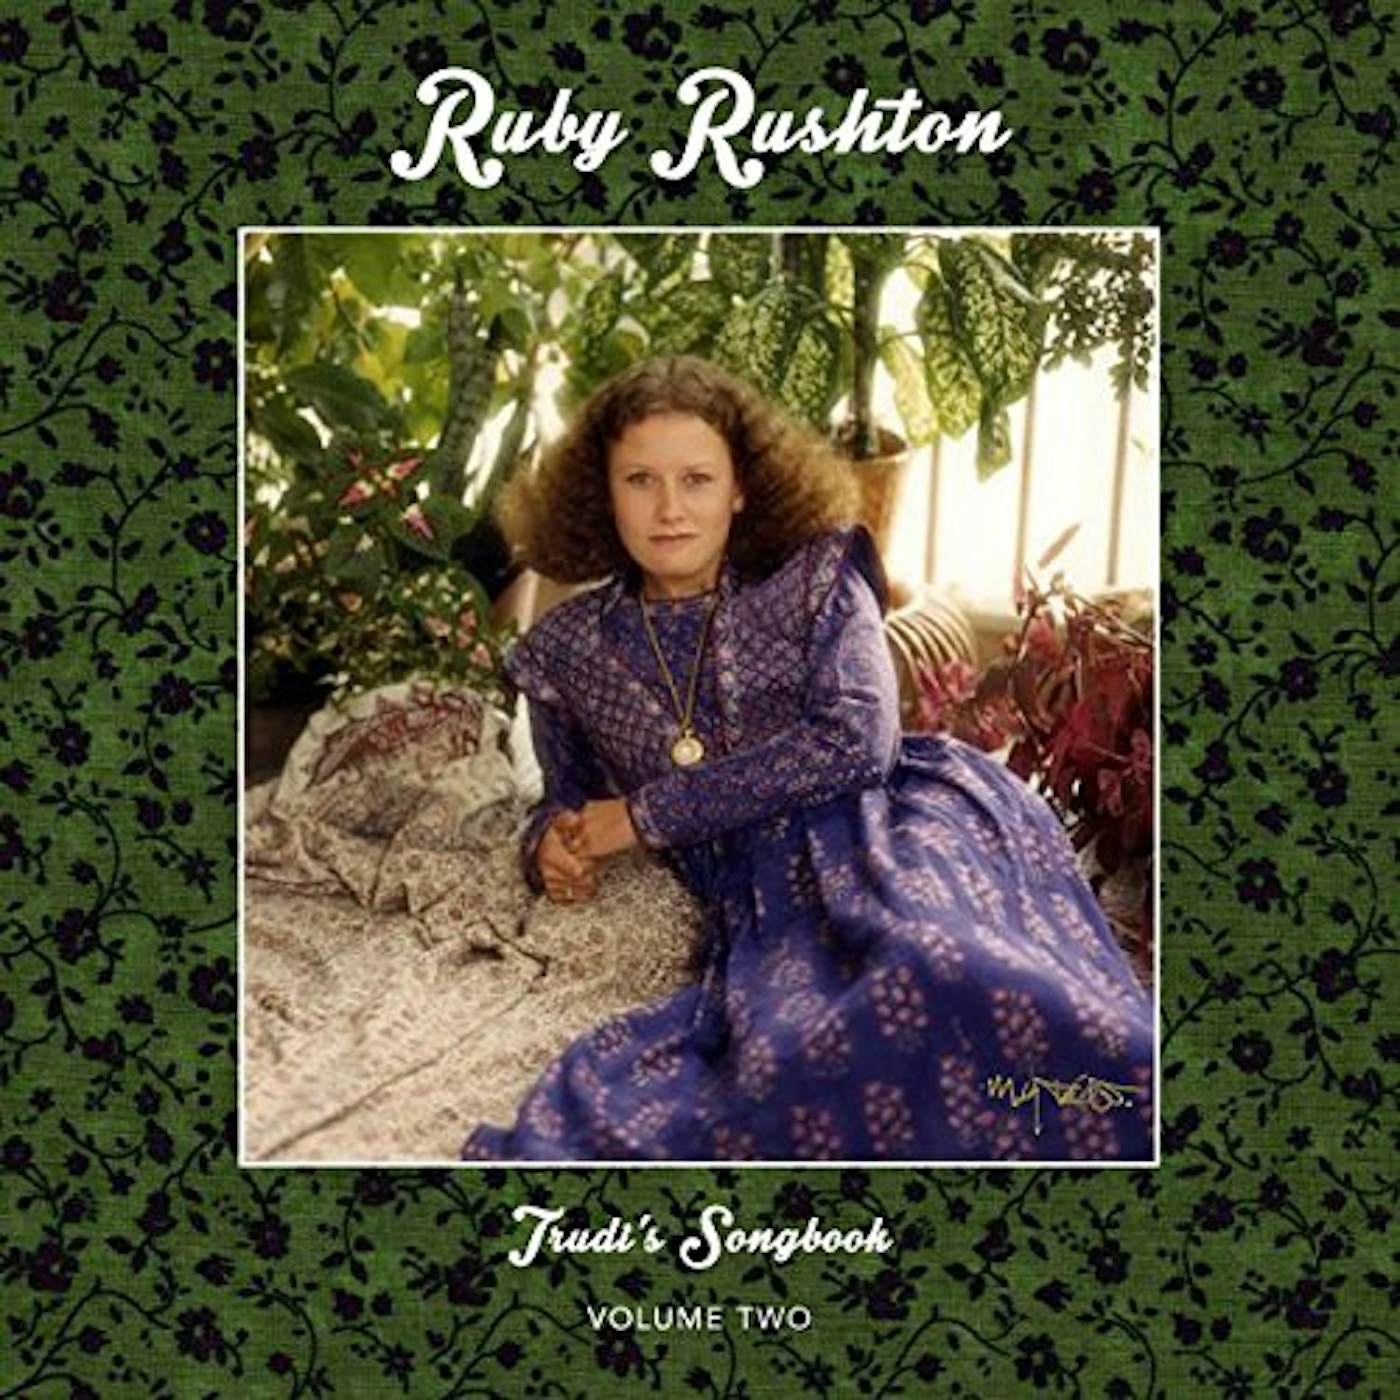 Ruby Rushton TRUDI'S SONGBOOK: 2 CD